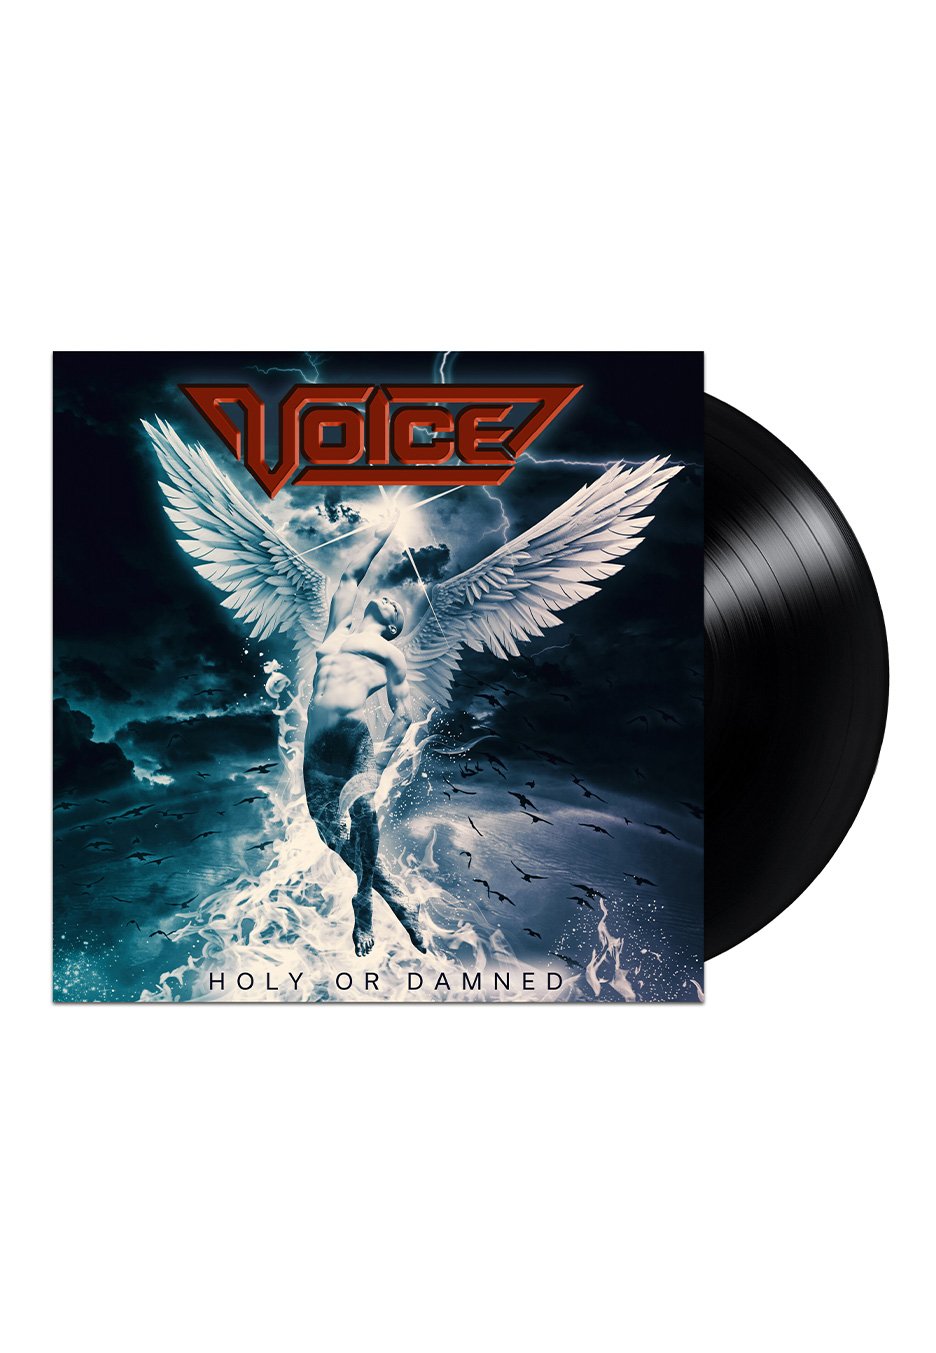 Voice - Holy Or Damned Ltd. - Vinyl